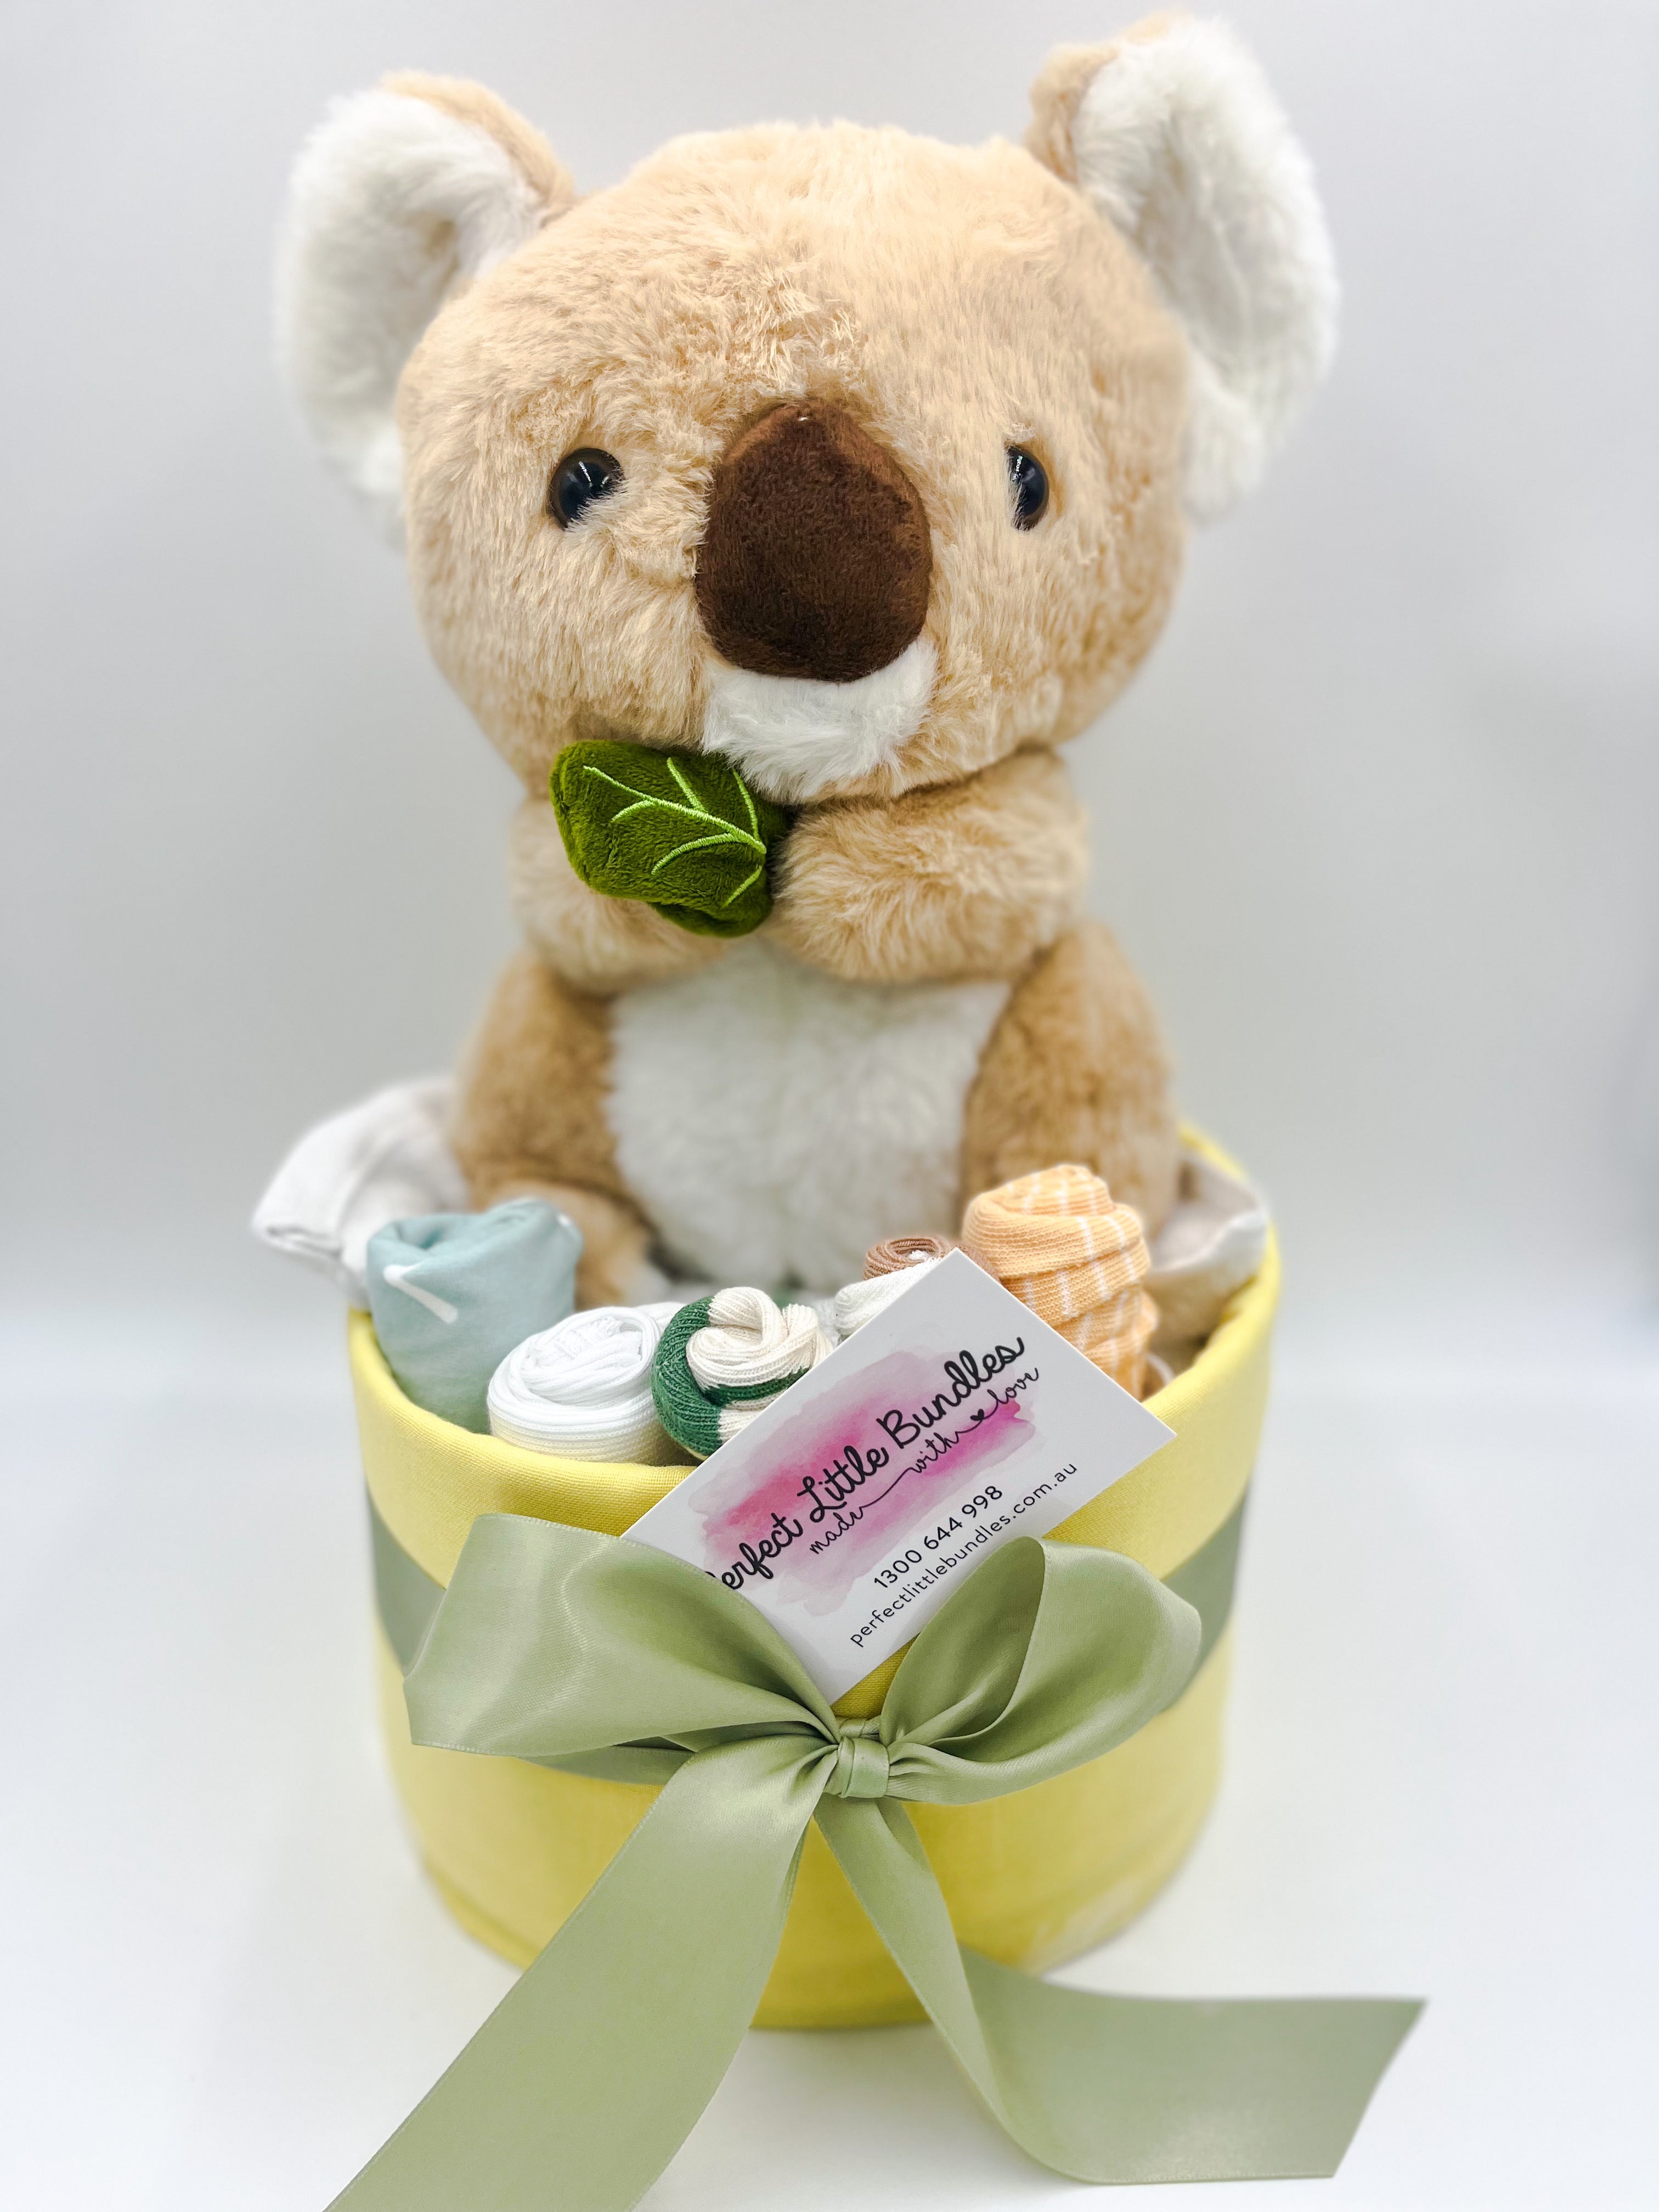 Blinky Baby Koala Nappy Cake - Limited Summer Edition